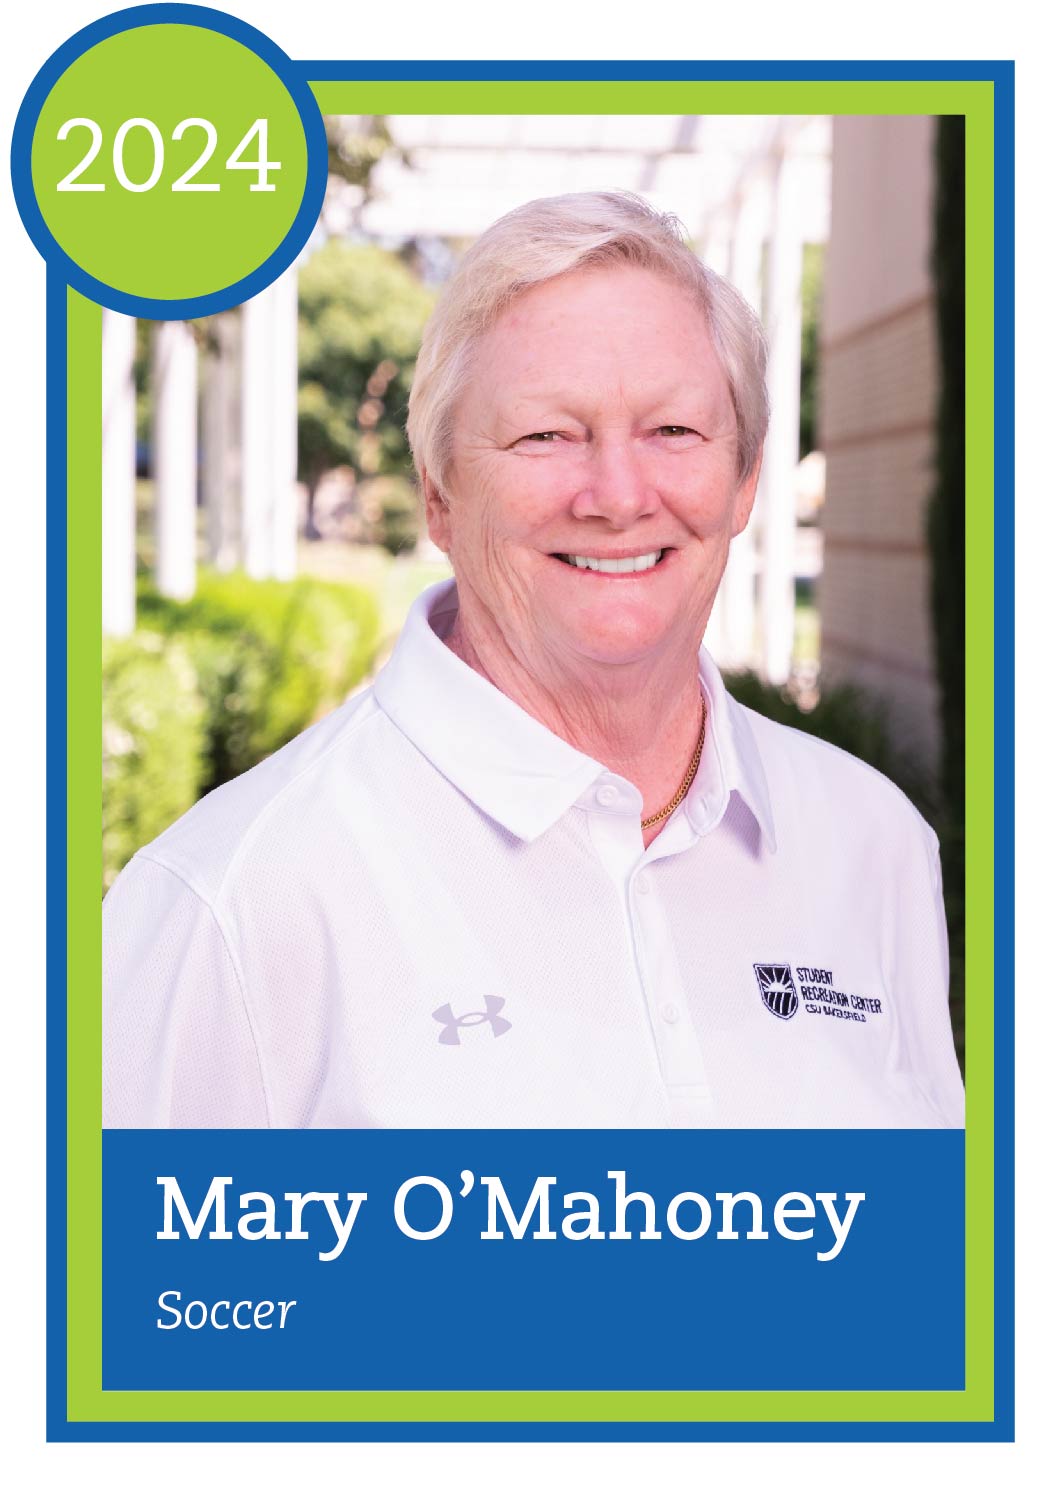 Baseball card design with headshot of Mary O'Mahoney and text "Mary O'Mahoney, soccer"